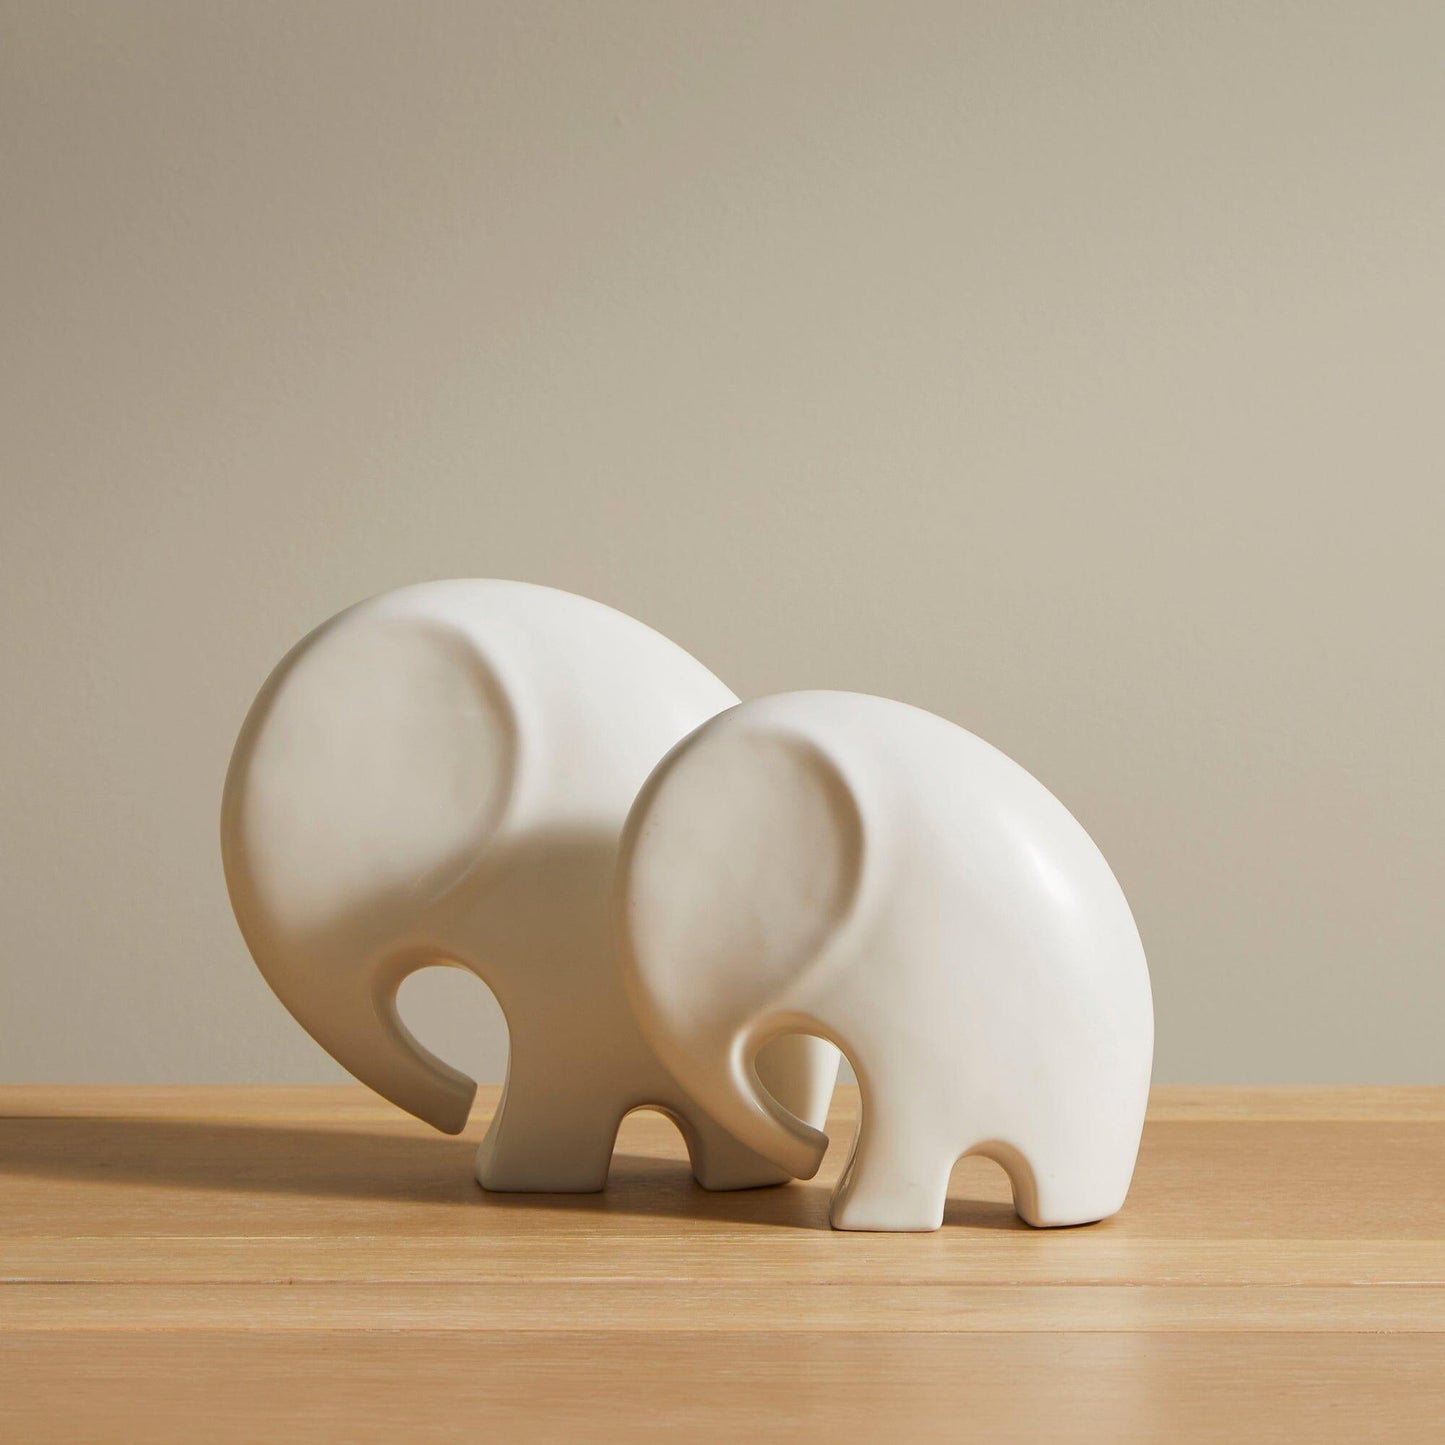 Meru 18cm Ceramic Elephant Ornament - White - Laura James